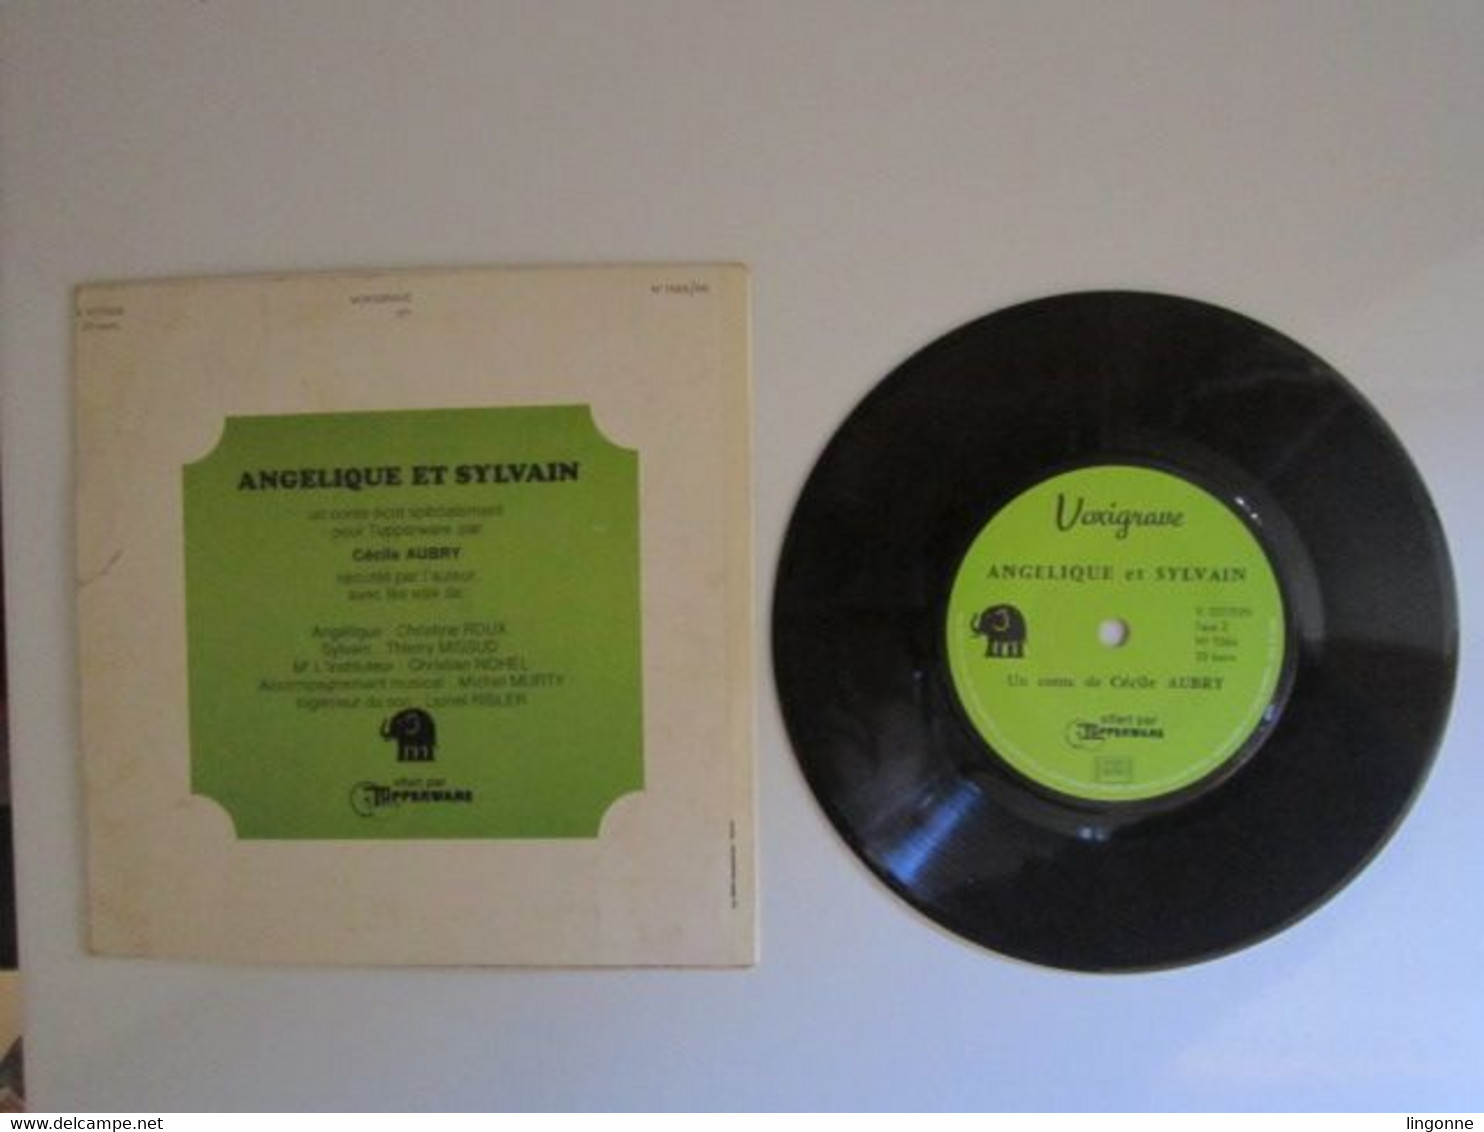 1971 Vinyle 45 Tours LIVRE DISQUE DE CECILE AUBRY " ANGELIQUE ET SYLVAIN " OFFERT PAR TUPPERWARE - Enfants